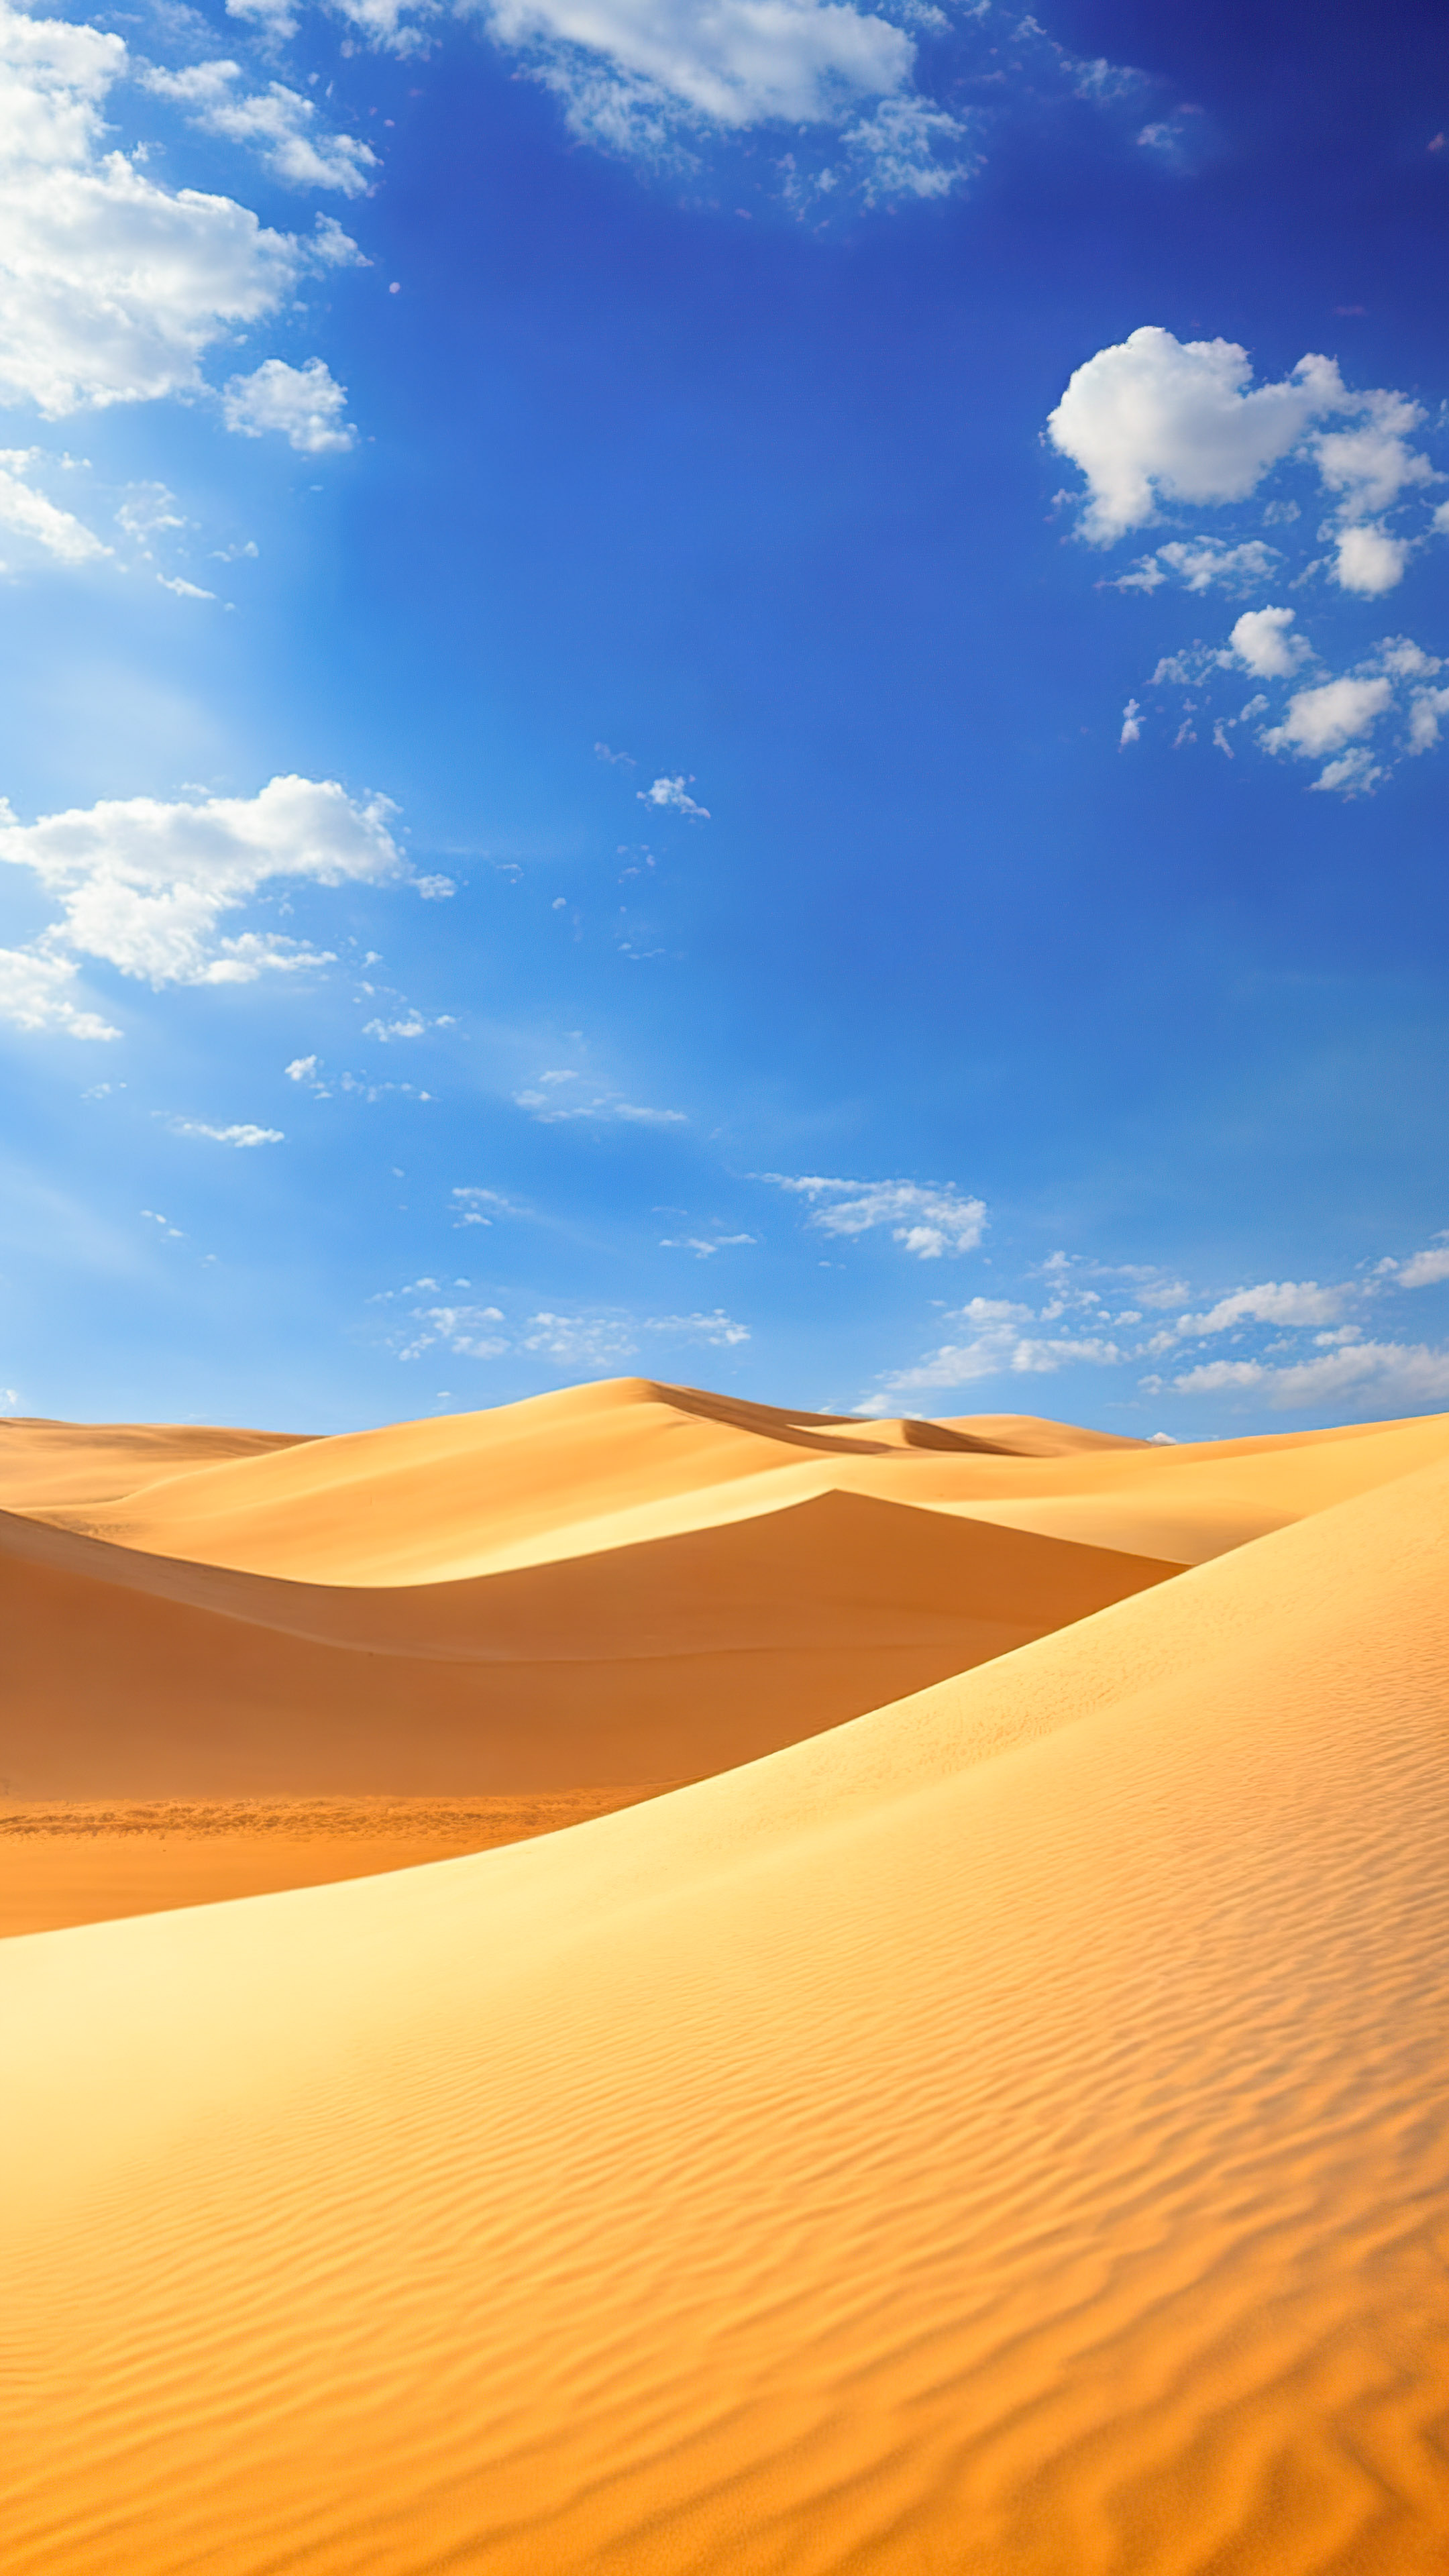 Profitez de la tranquillité d'un paysage désertique serein avec des dunes de sable s'étendant jusqu'à l'horizon sous un vaste ciel bleu, avec notre fond d'écran de ciel ensoleillé.